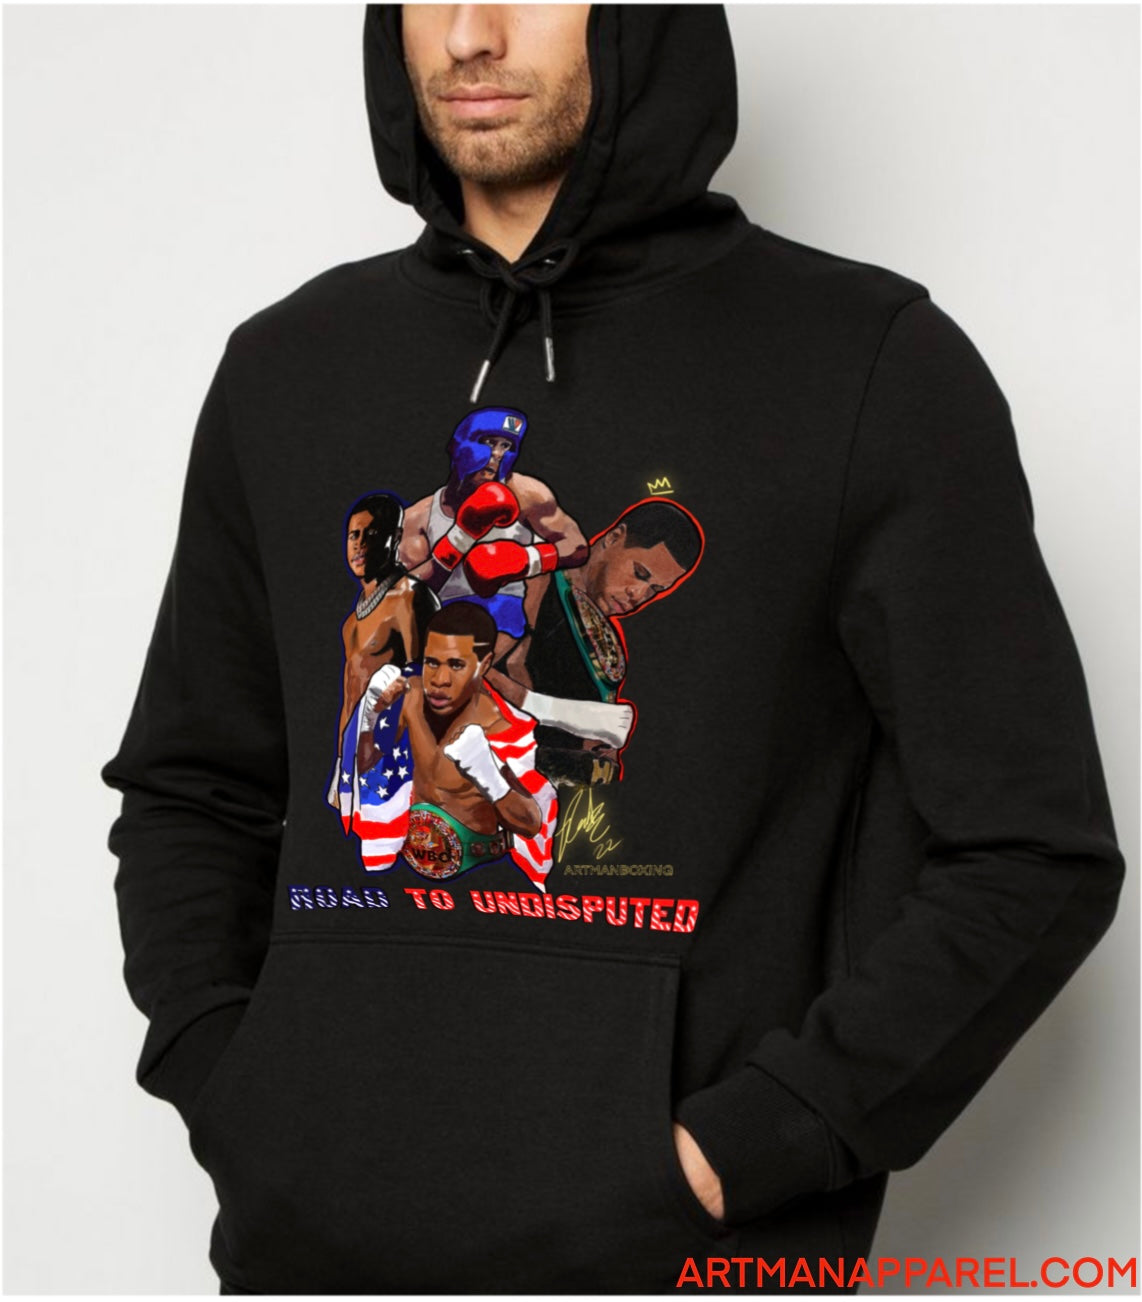 The “ American dream “ Blk hoodie